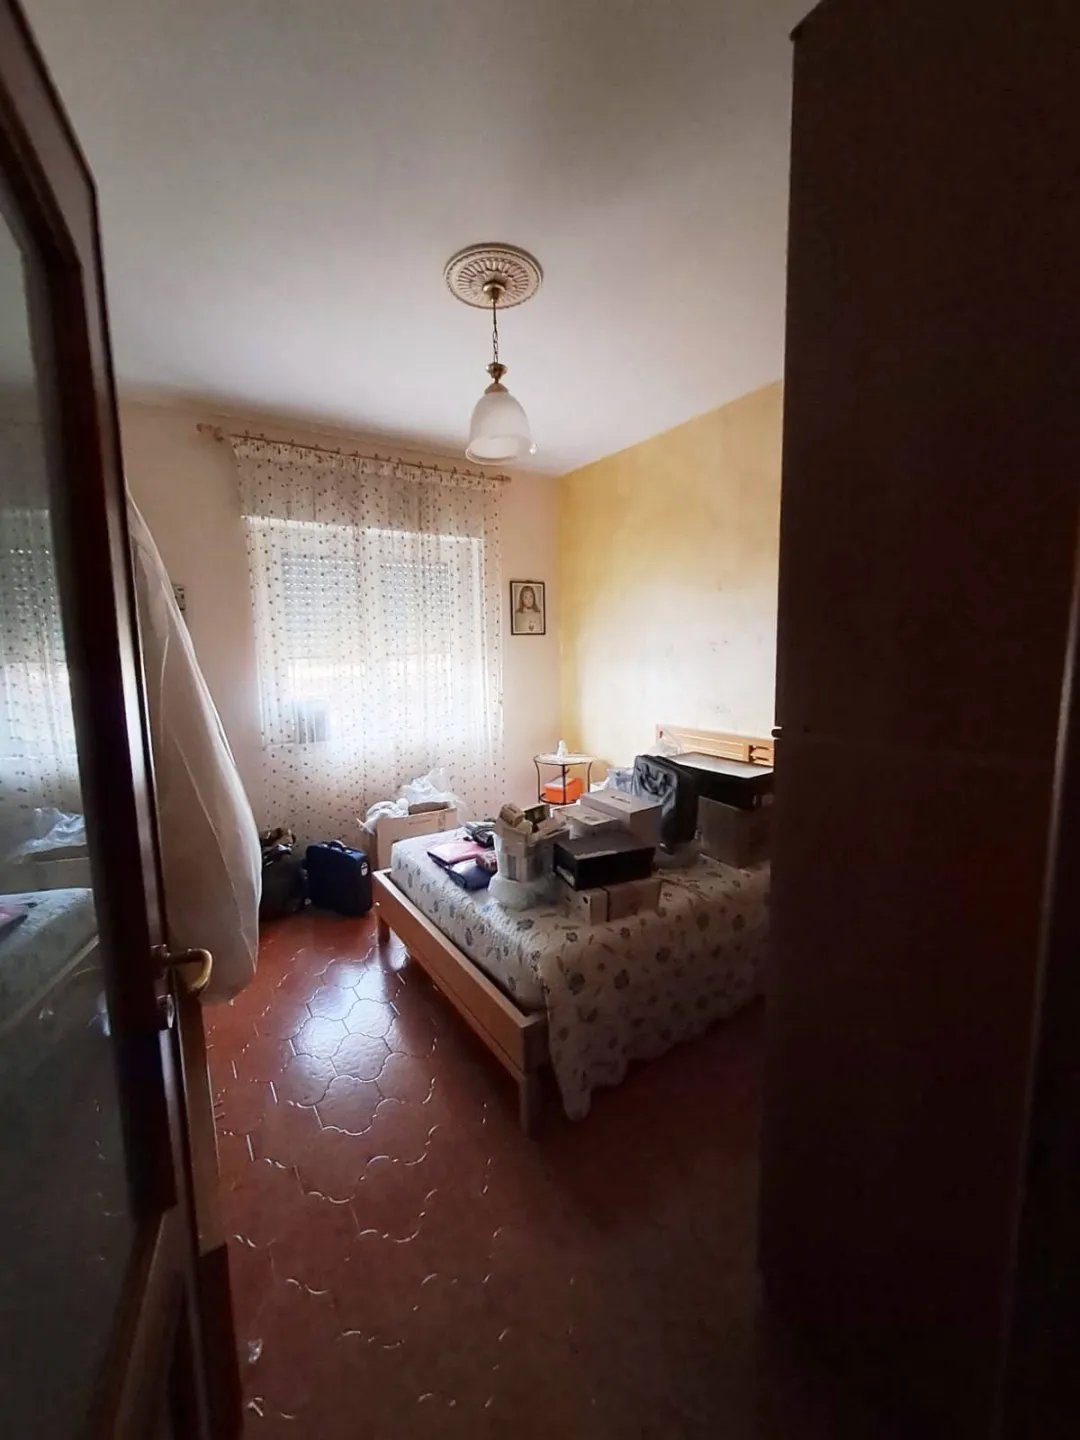 Immagine per Appartamento in vendita a Villaricca corso europa